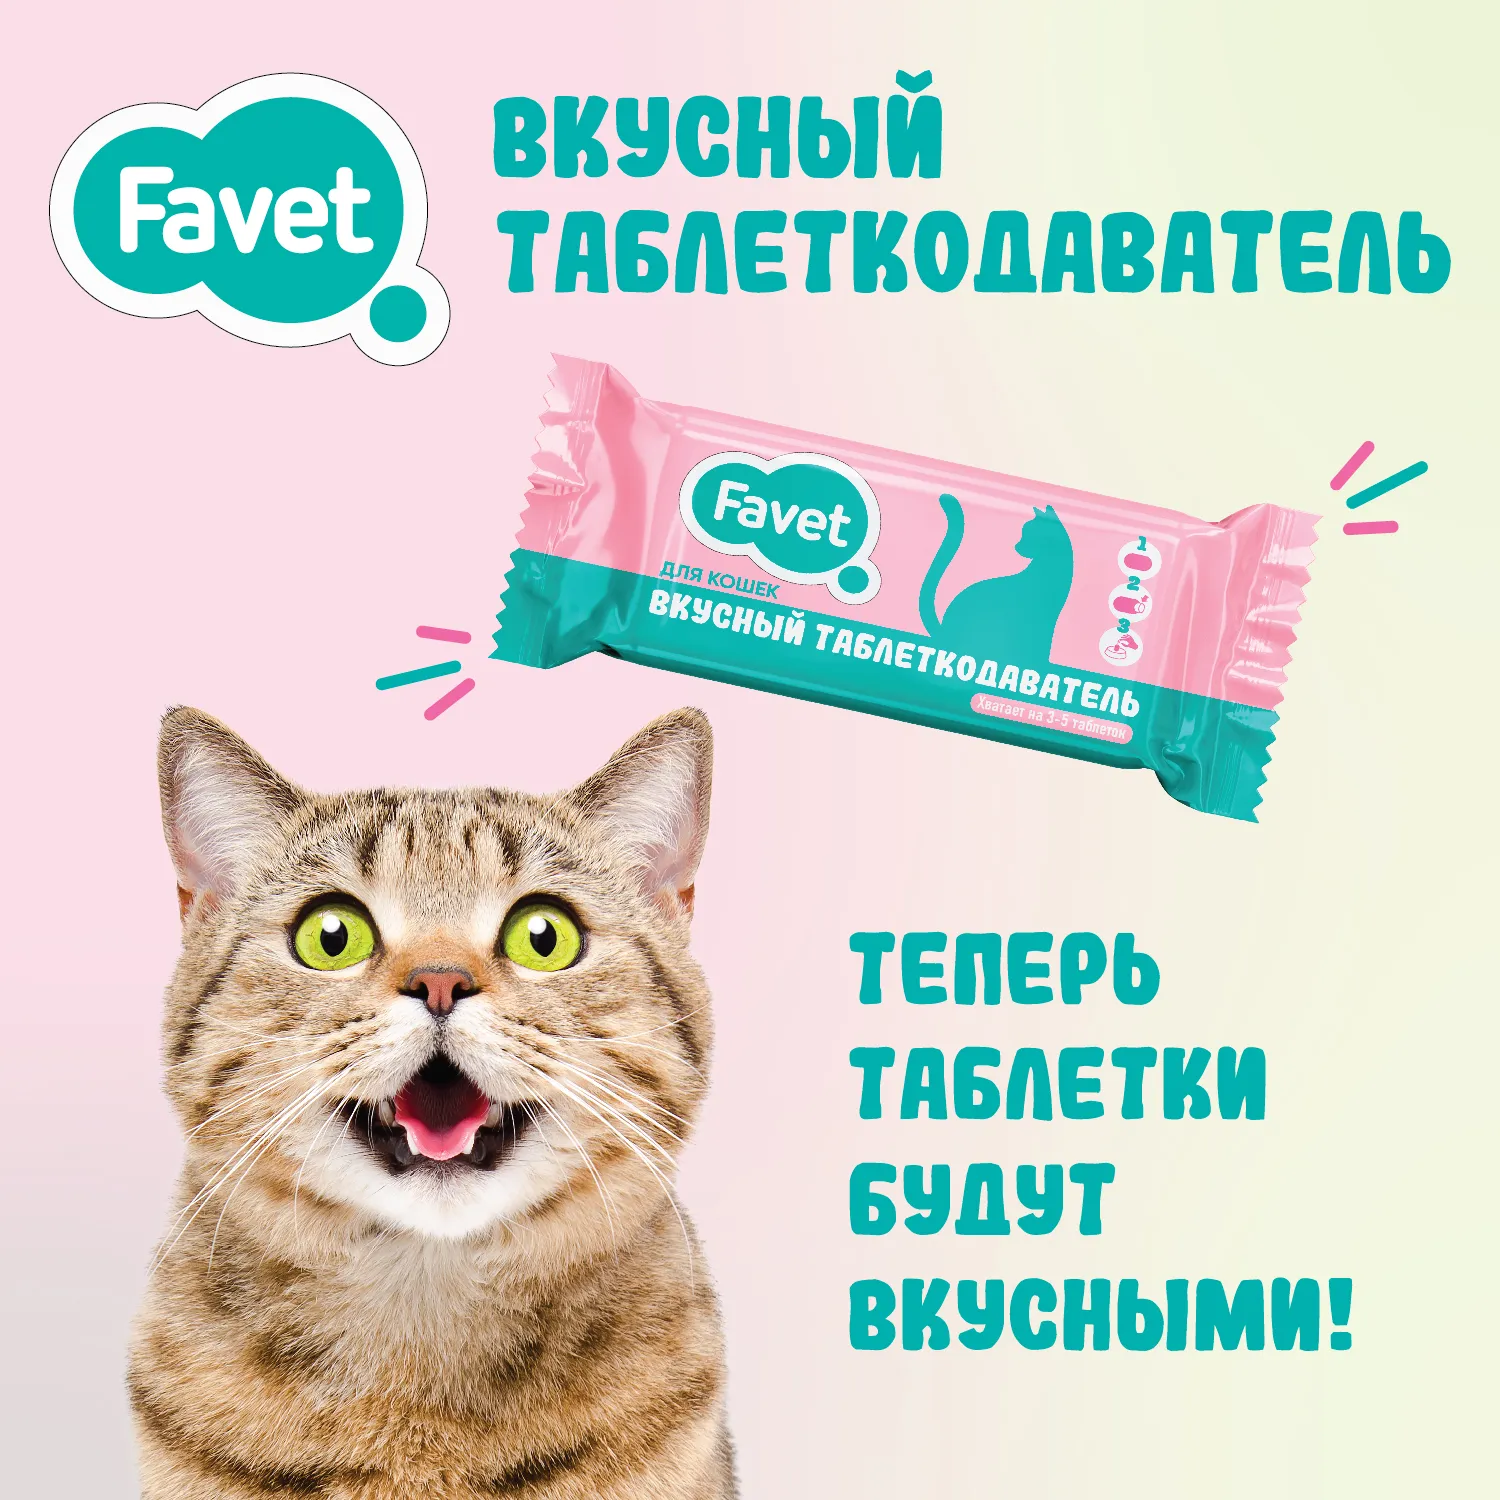 Favet Вкусный таблеткодаватель для кошек (14 шт.), шоу-бокс